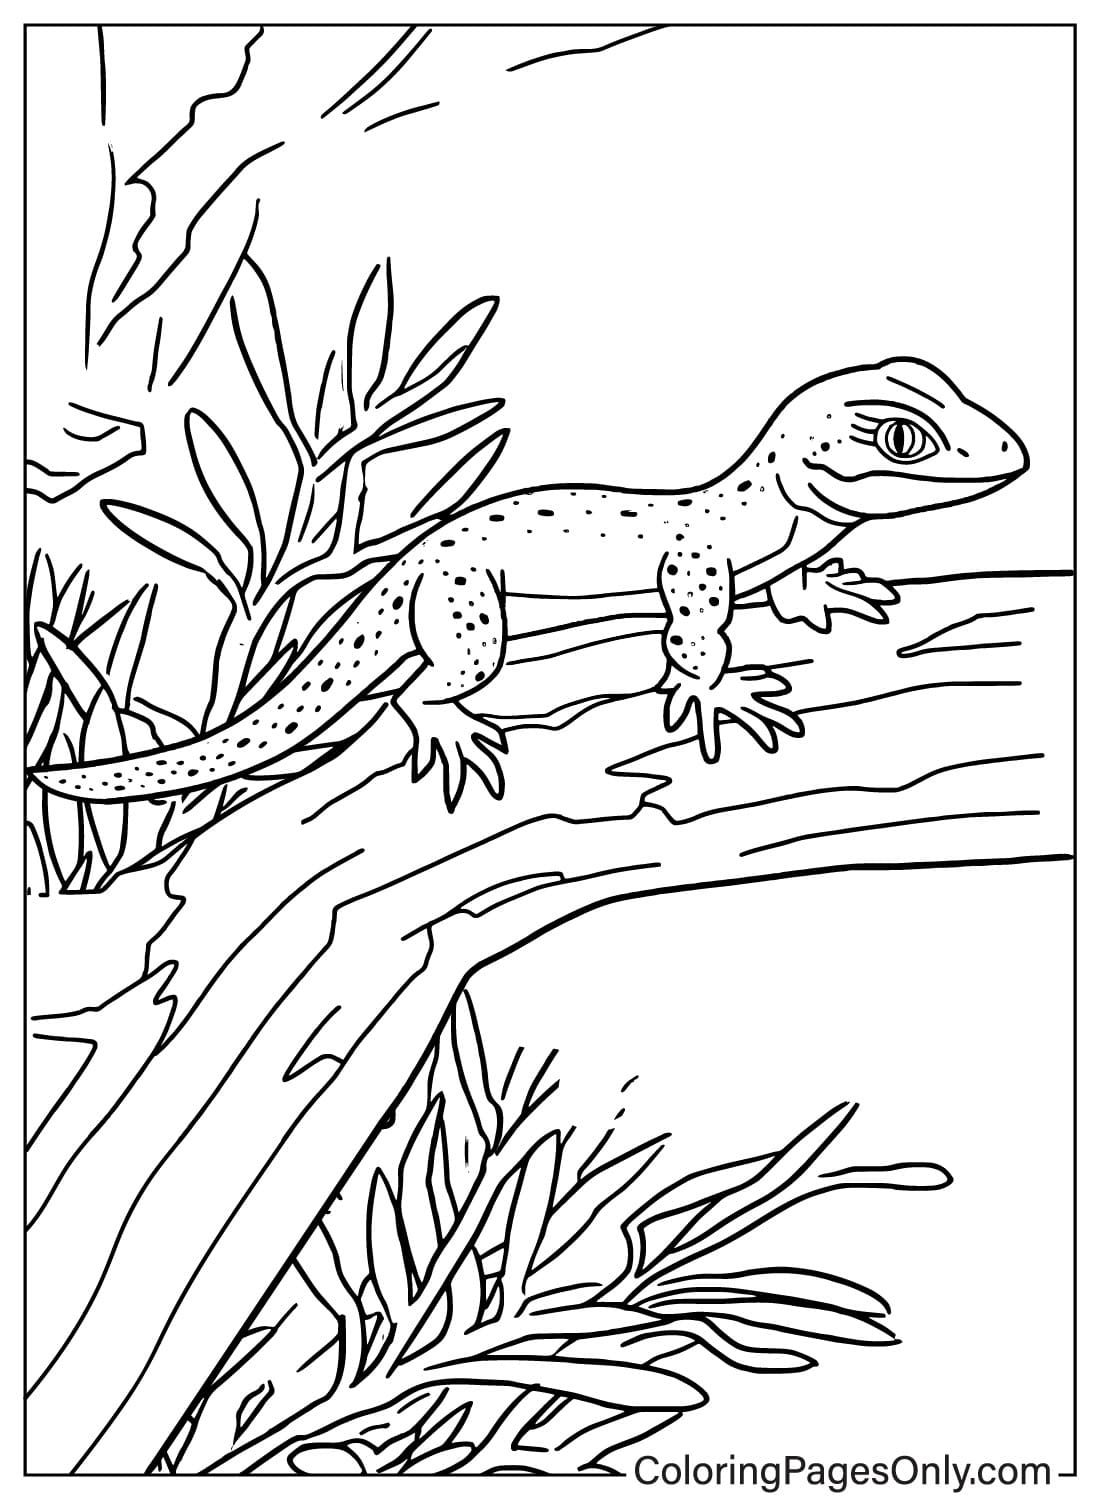 Página para colorear de lagarto gratis de Lagarto